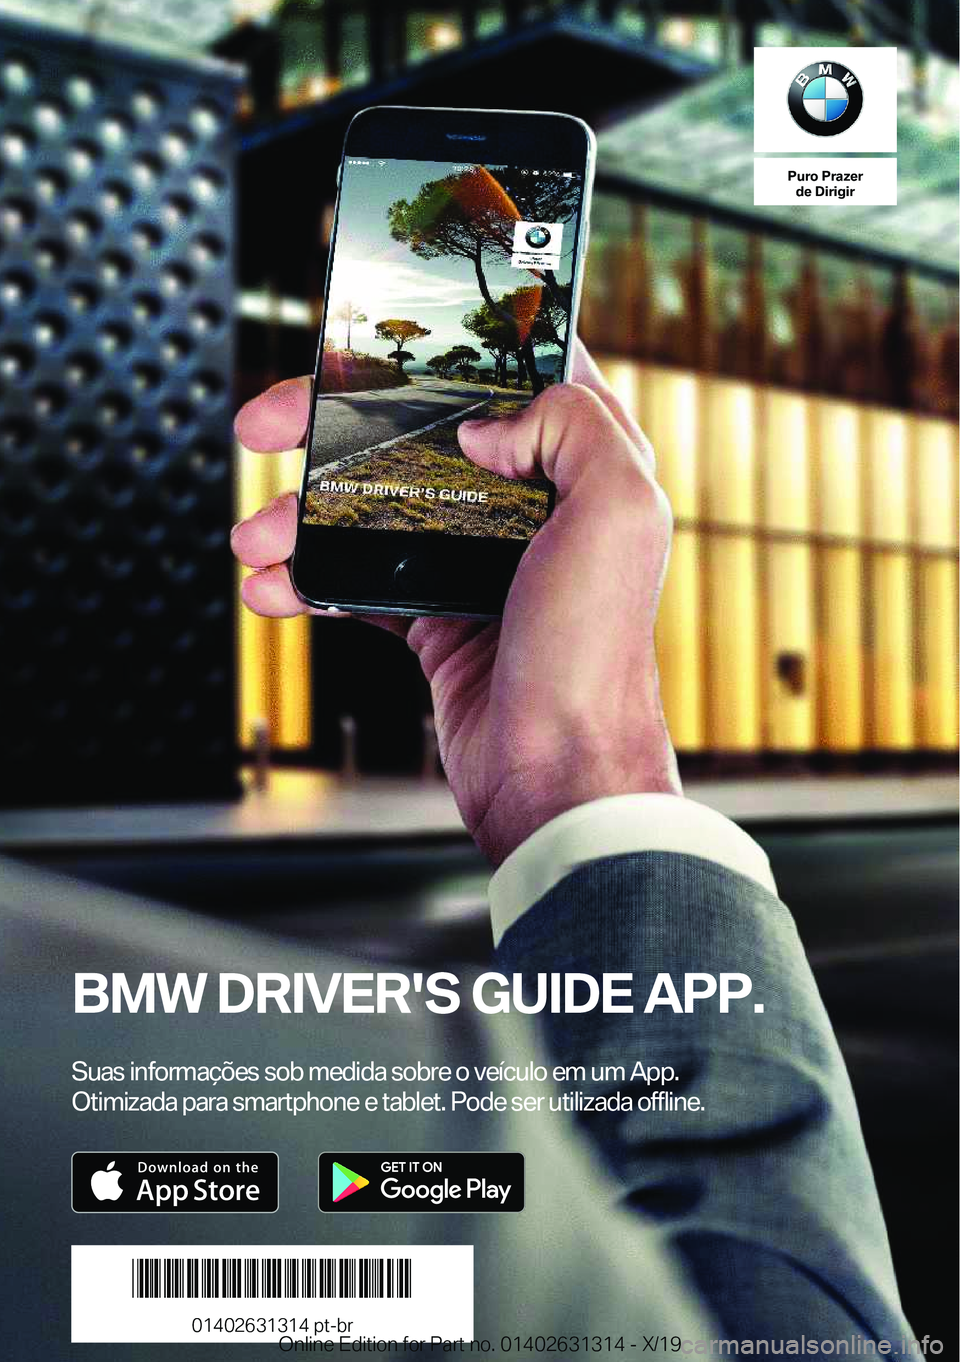 BMW M8 2020  Manual do condutor (in Portuguese) �P�u�r�o��P�r�a�z�e�r�d�e��D�i�r�i�g�i�r
�B�M�W��D�R�I�V�E�R�'�S��G�U�I�D�E��A�P�P�.
�S�u�a�s��i�n�f�o�r�m�a�